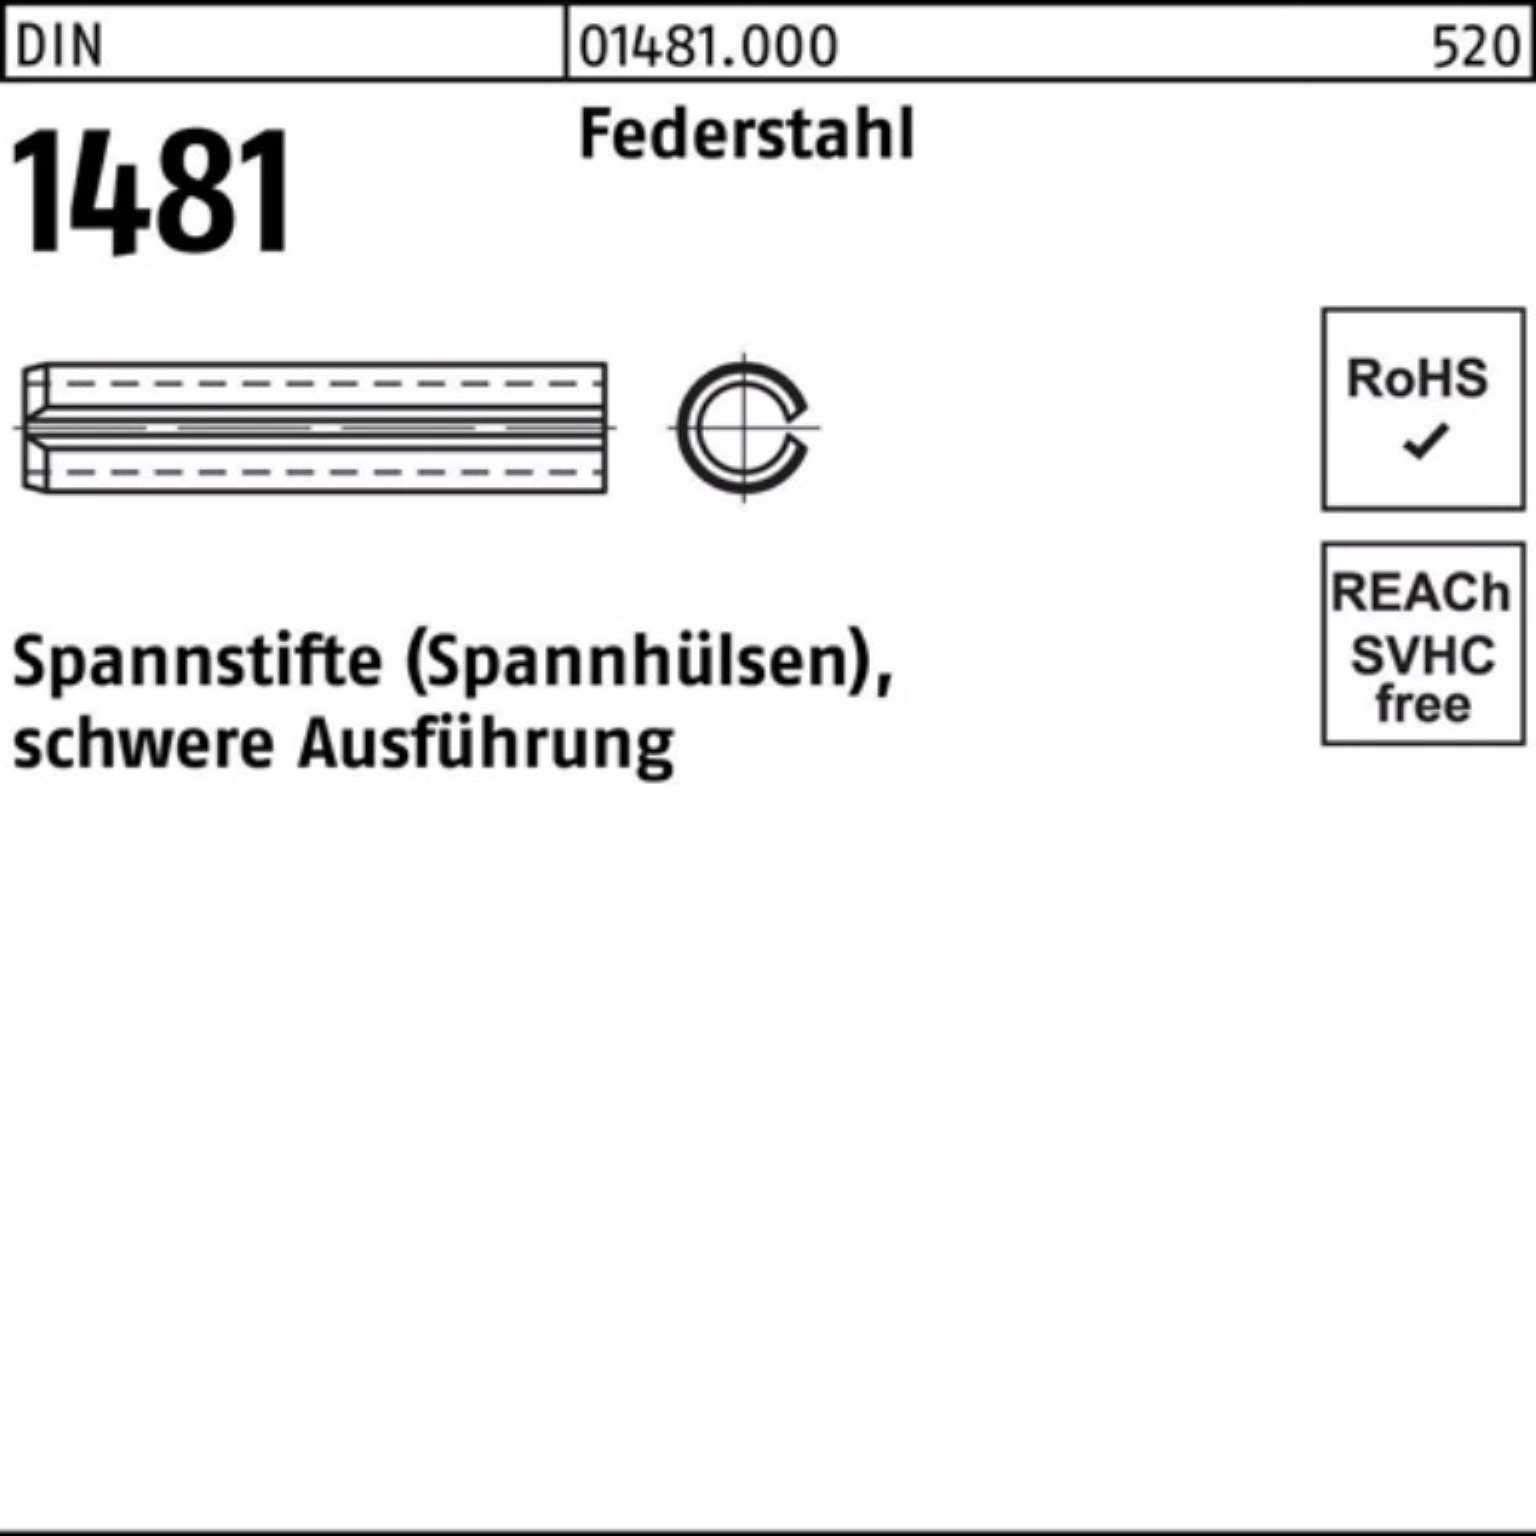 Reyher Spannstift 200er Pack Spannstift DIN 1481 4x 14 Federstahl schwere Ausführung 20